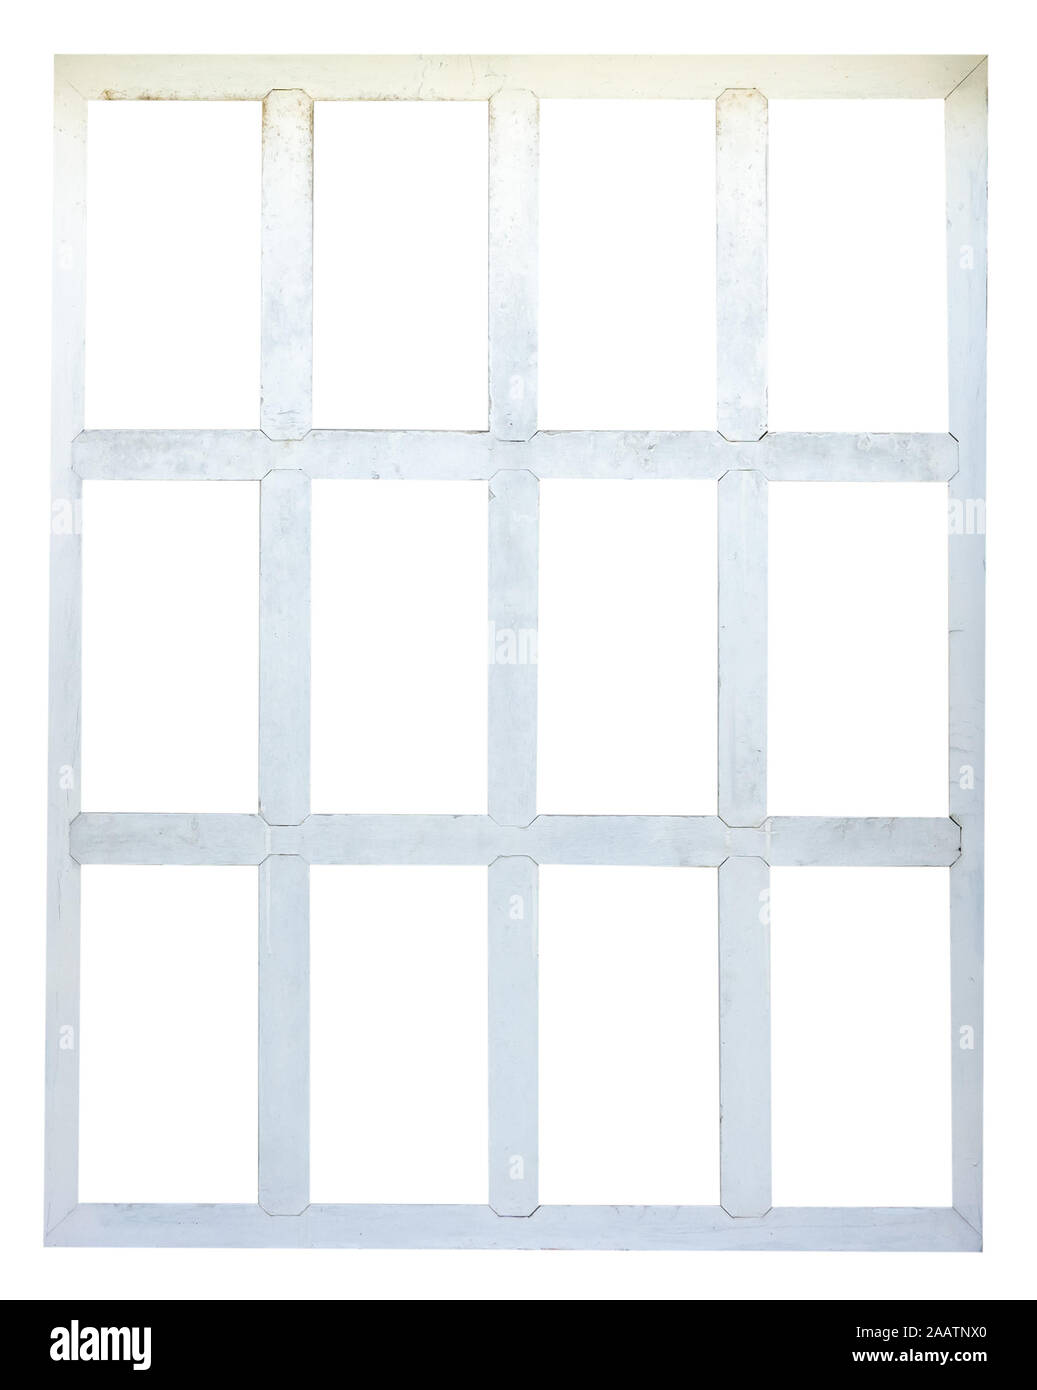 White wood window frame isolated on white background Stock Photo